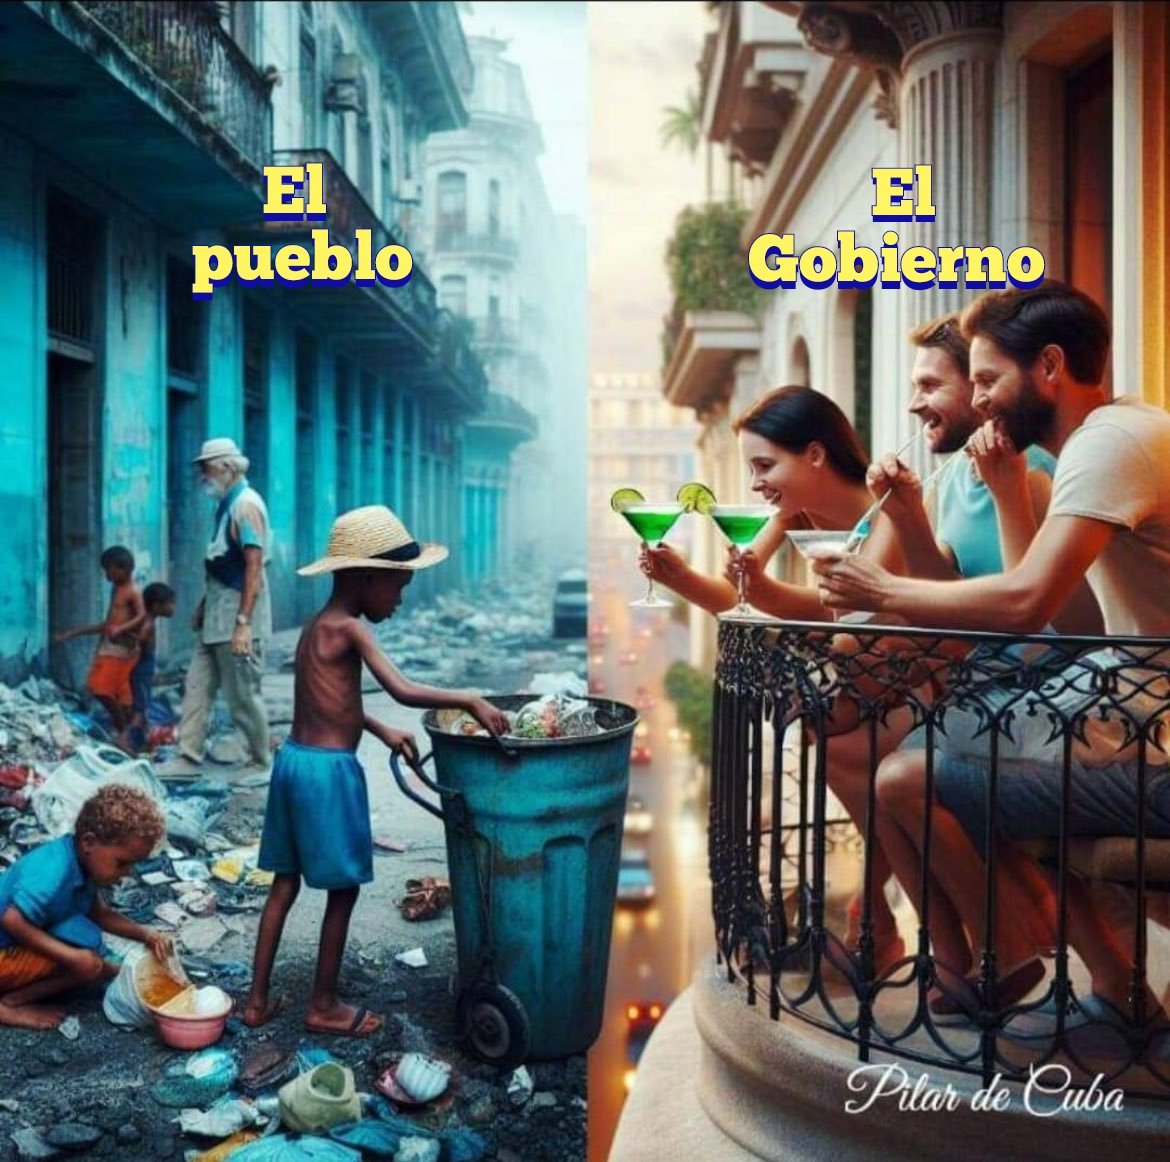 Asi se vive en cuba, venezuela y si lo permitimos a esto llegara ah México... En nosotros esta no dejar que esto suceda.